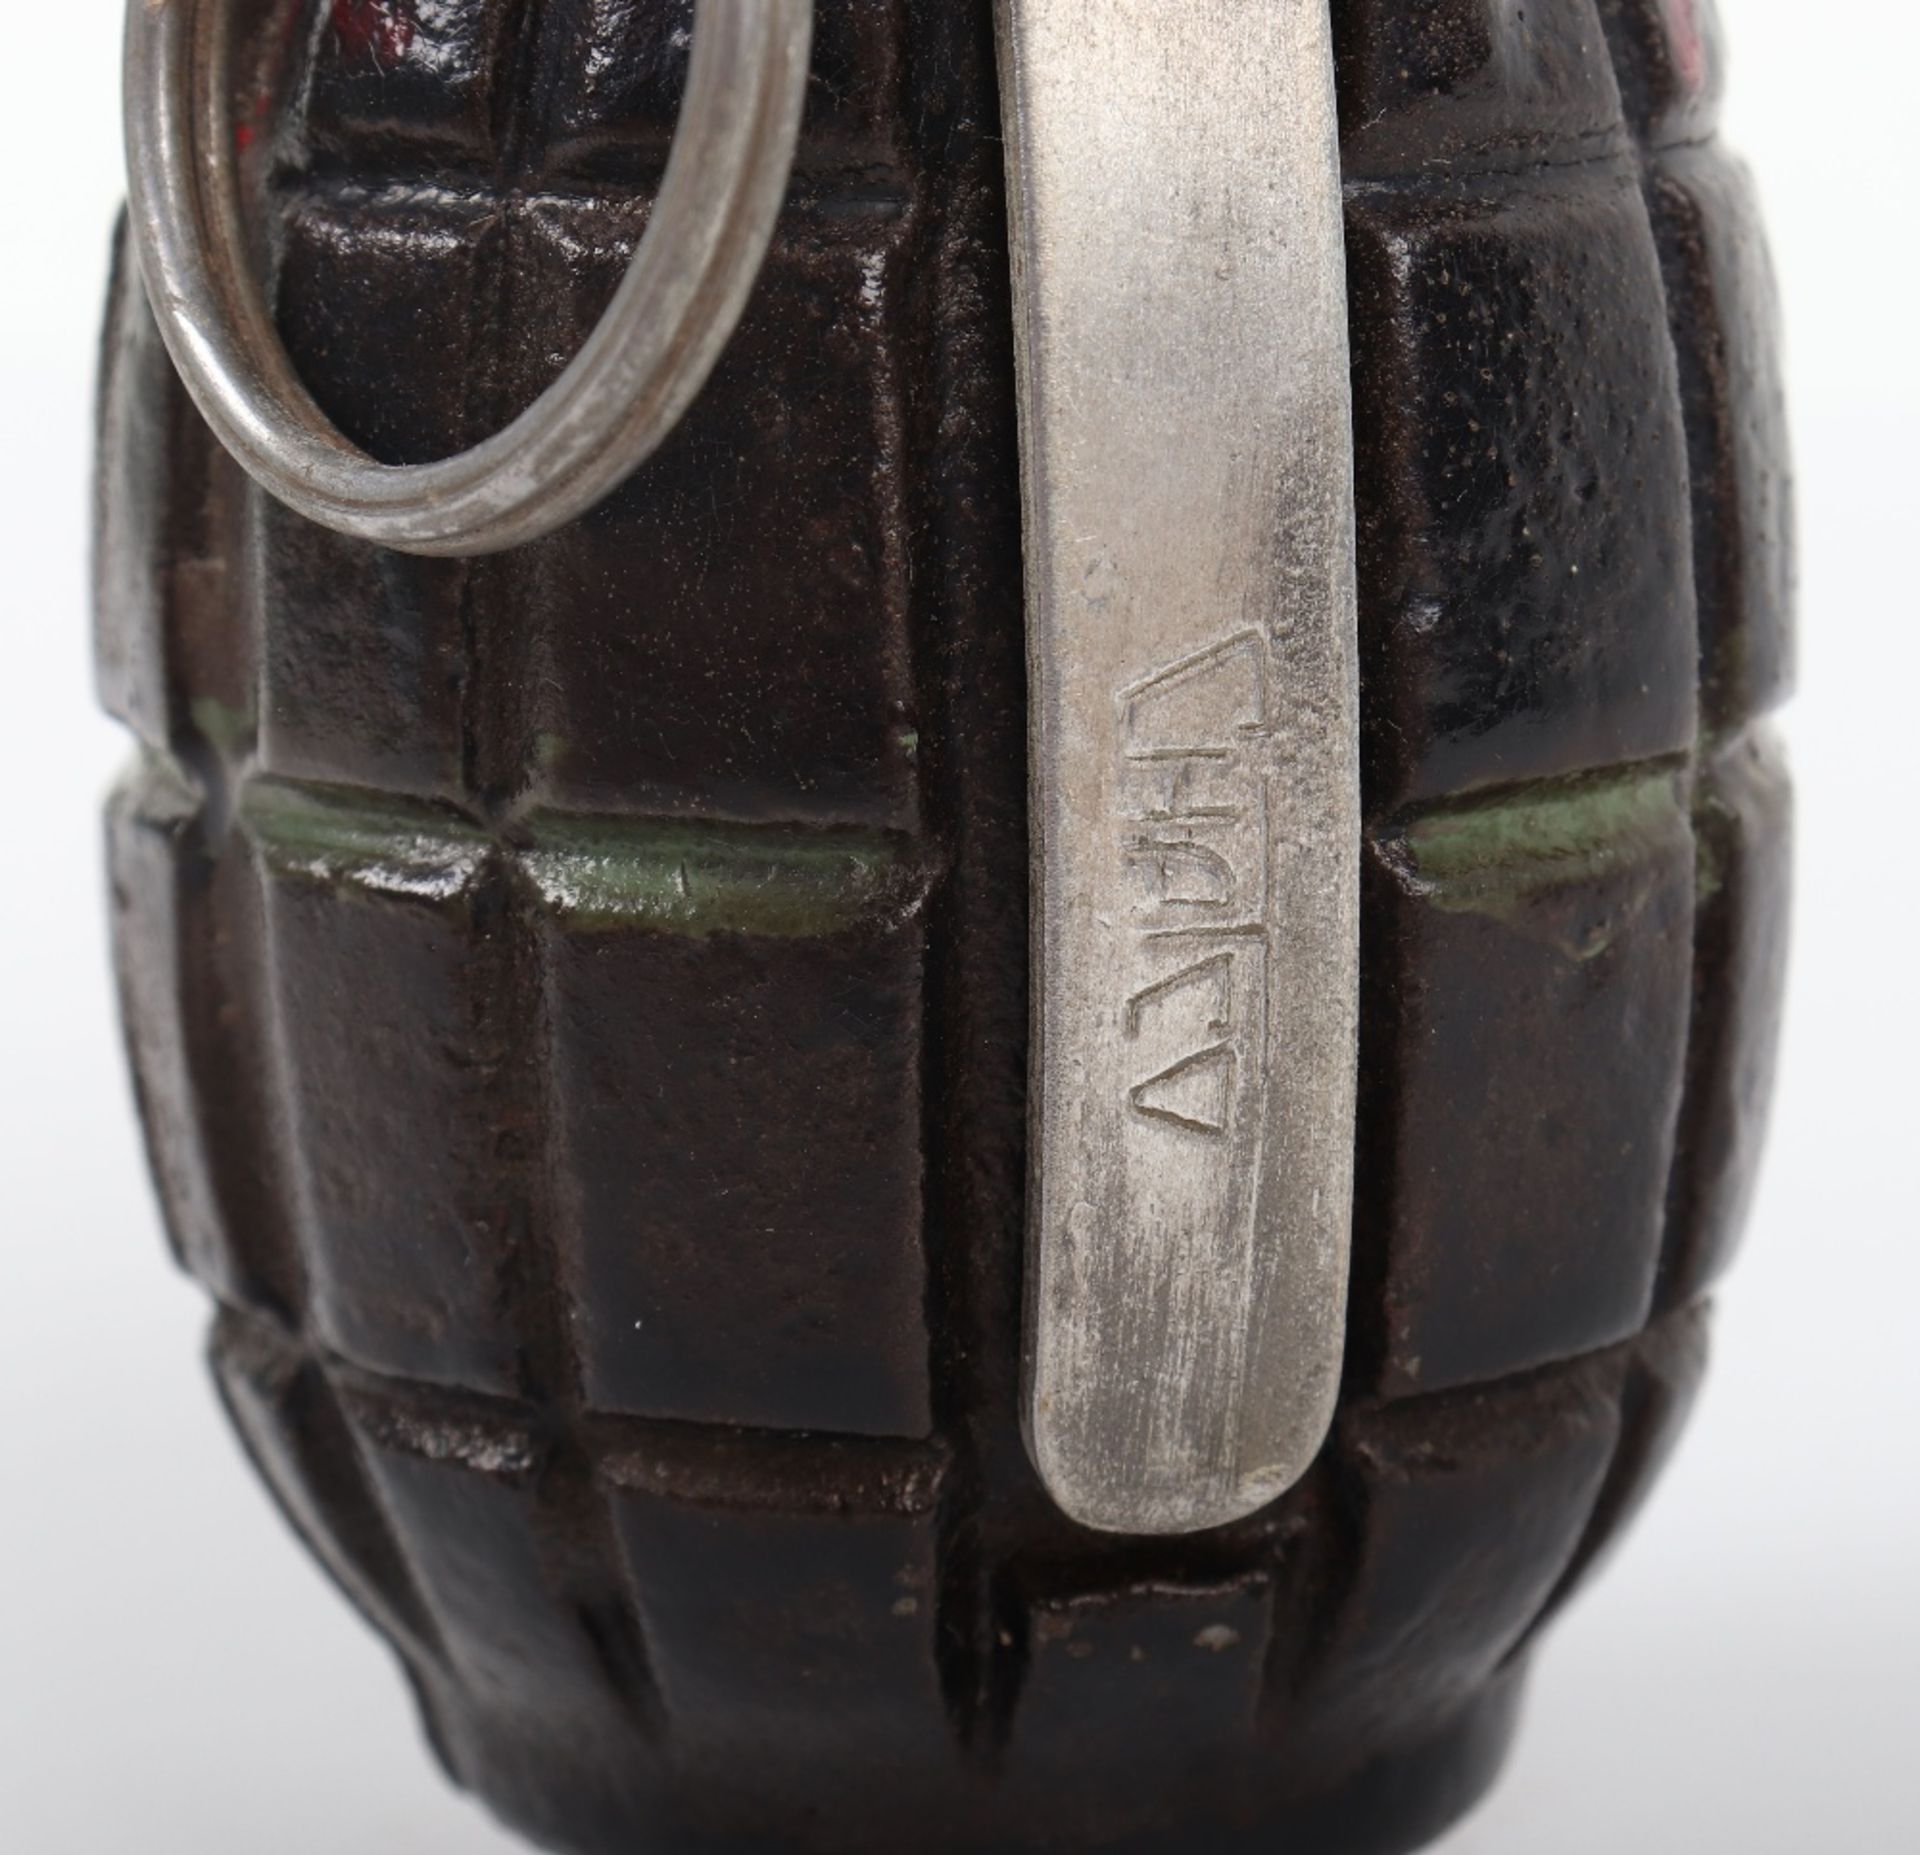 Inert British Mills Grenade - Image 3 of 5